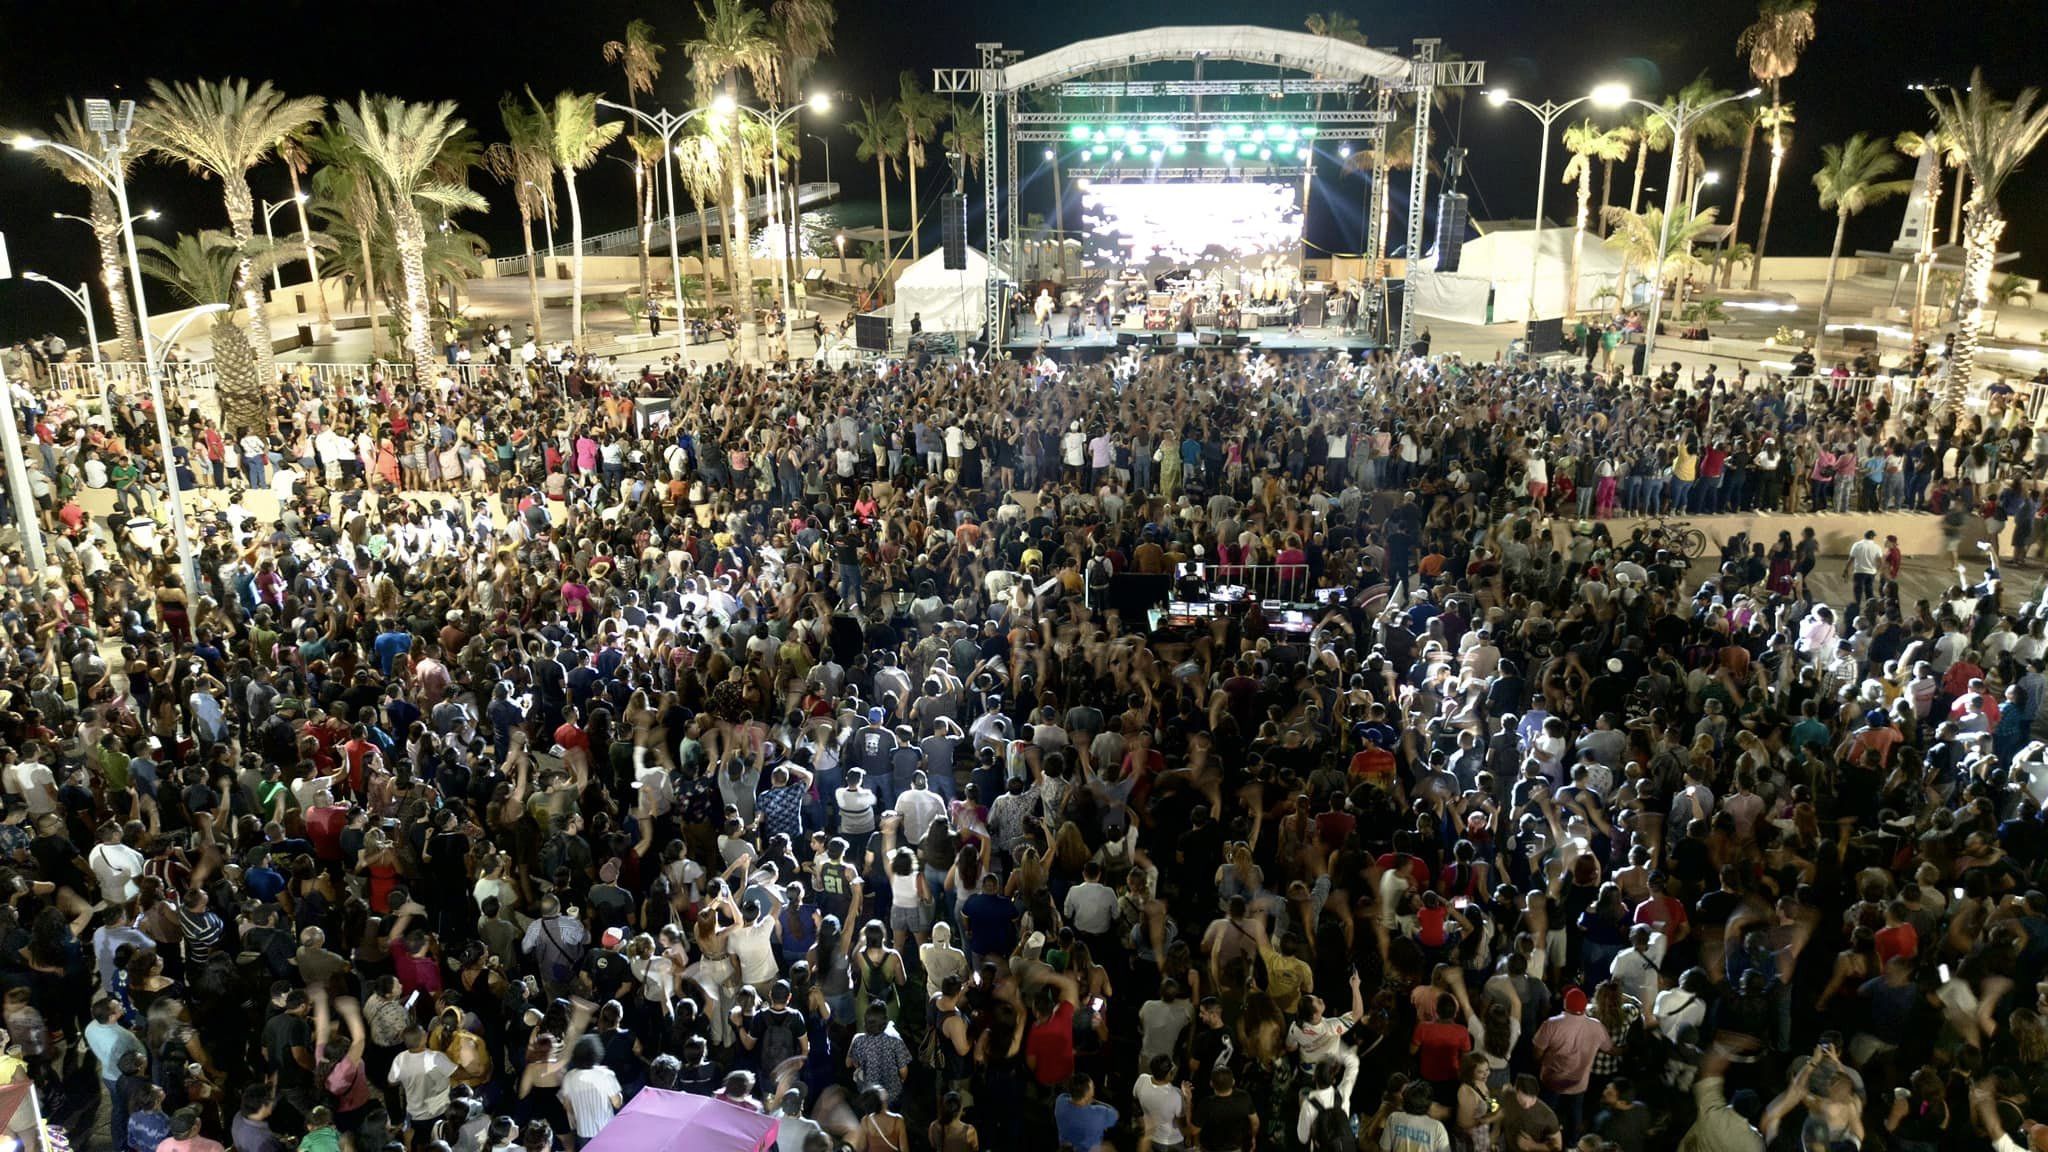 Gran concierto de “El Gran Silencio” en el Malecón